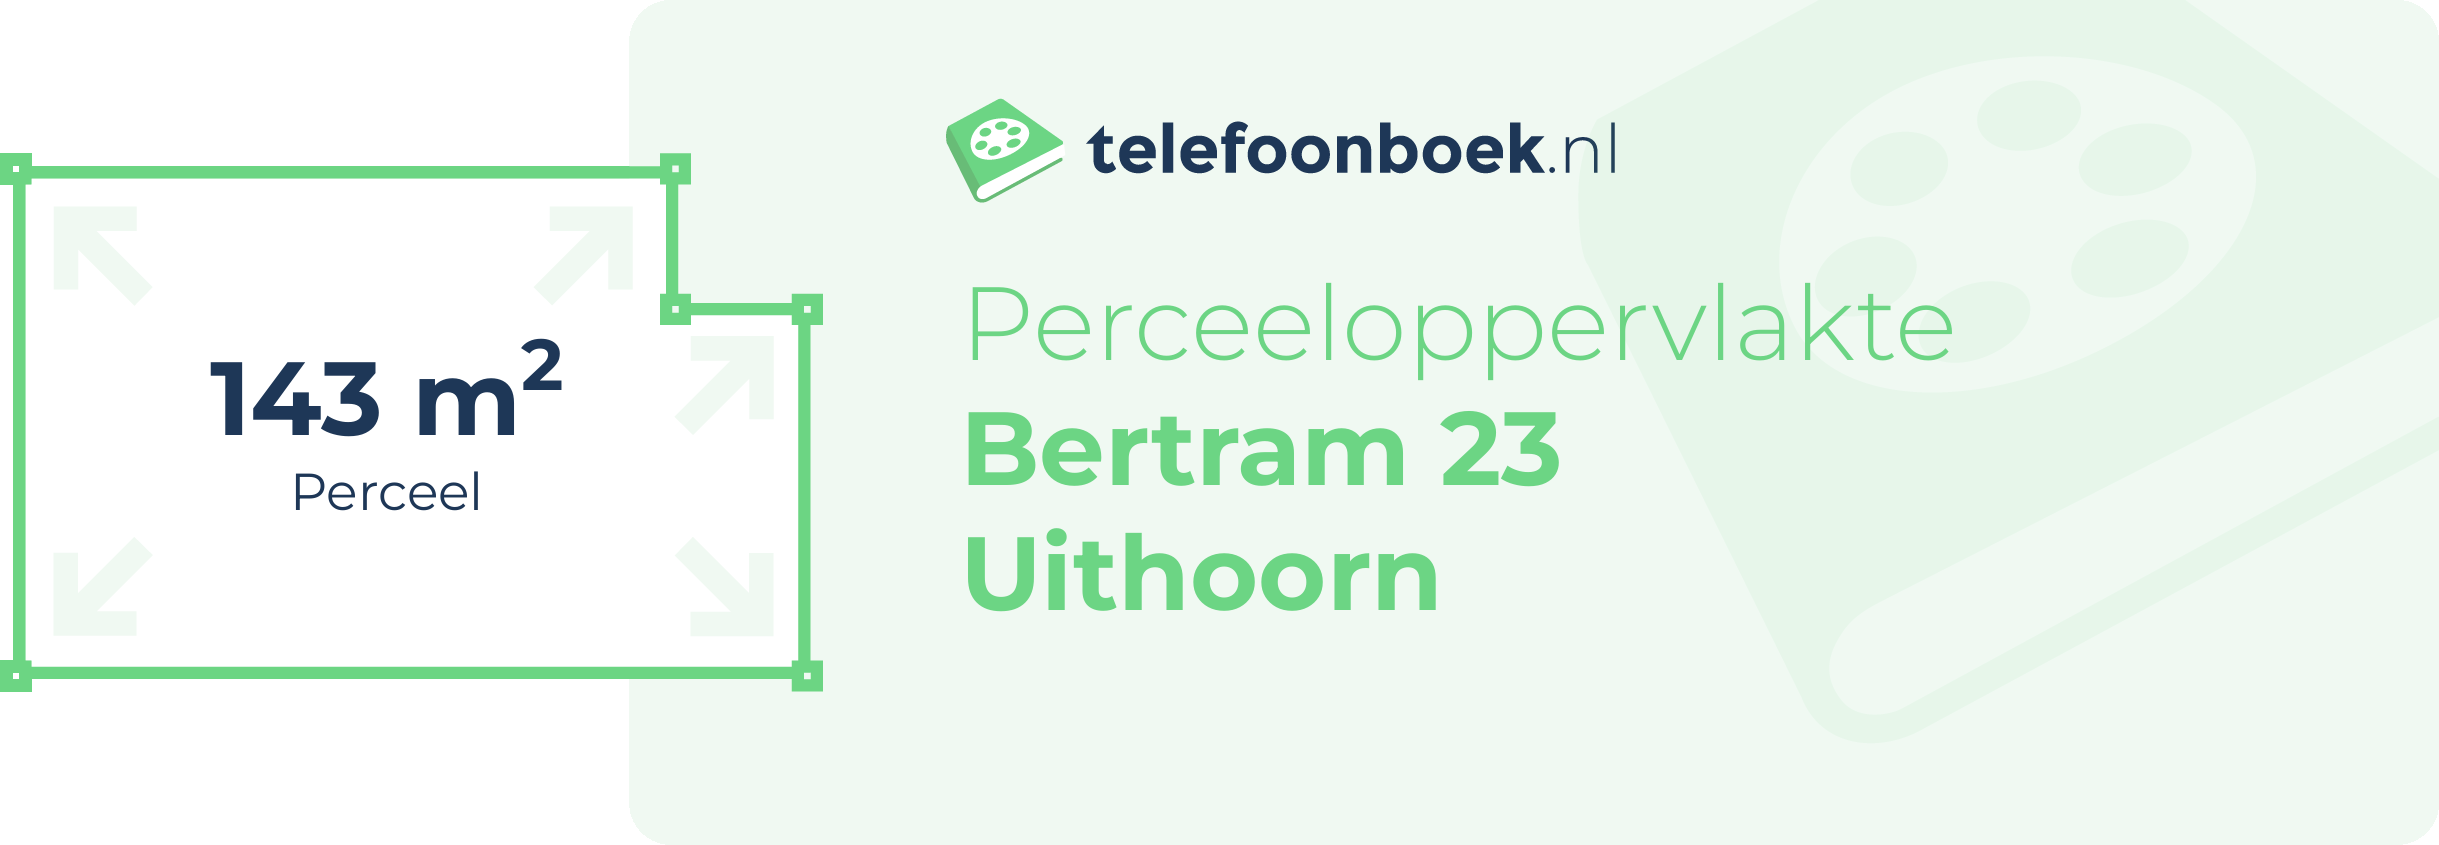 Perceeloppervlakte Bertram 23 Uithoorn